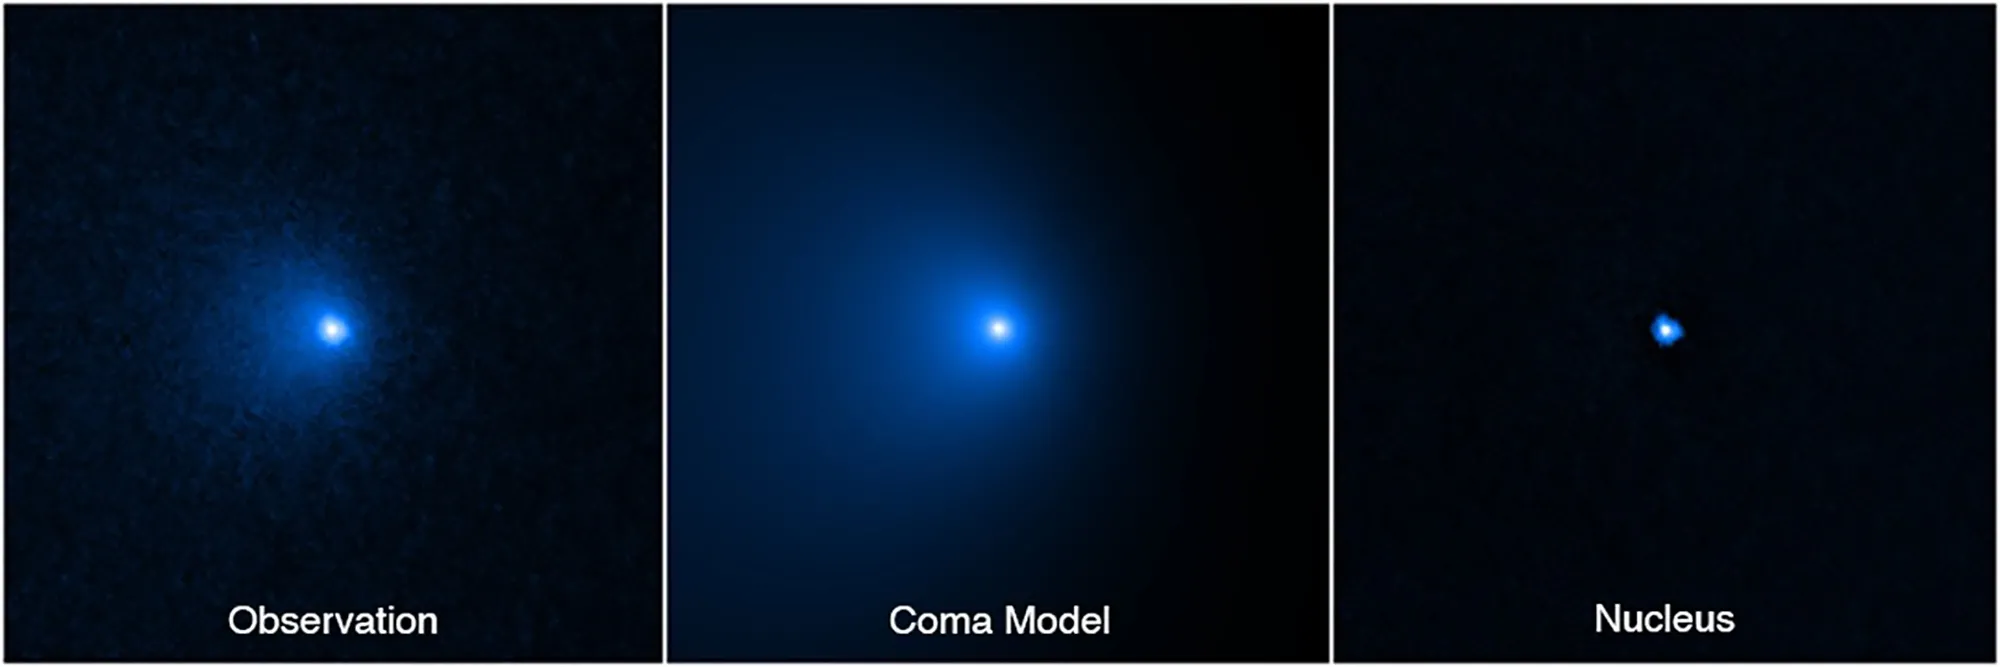 El año pasado se observó el cometa C/2014 UN271 (izquierda) y ahora los astrónomos han confirmado el tamaño de su núcleo (derecha), la parte sin cola